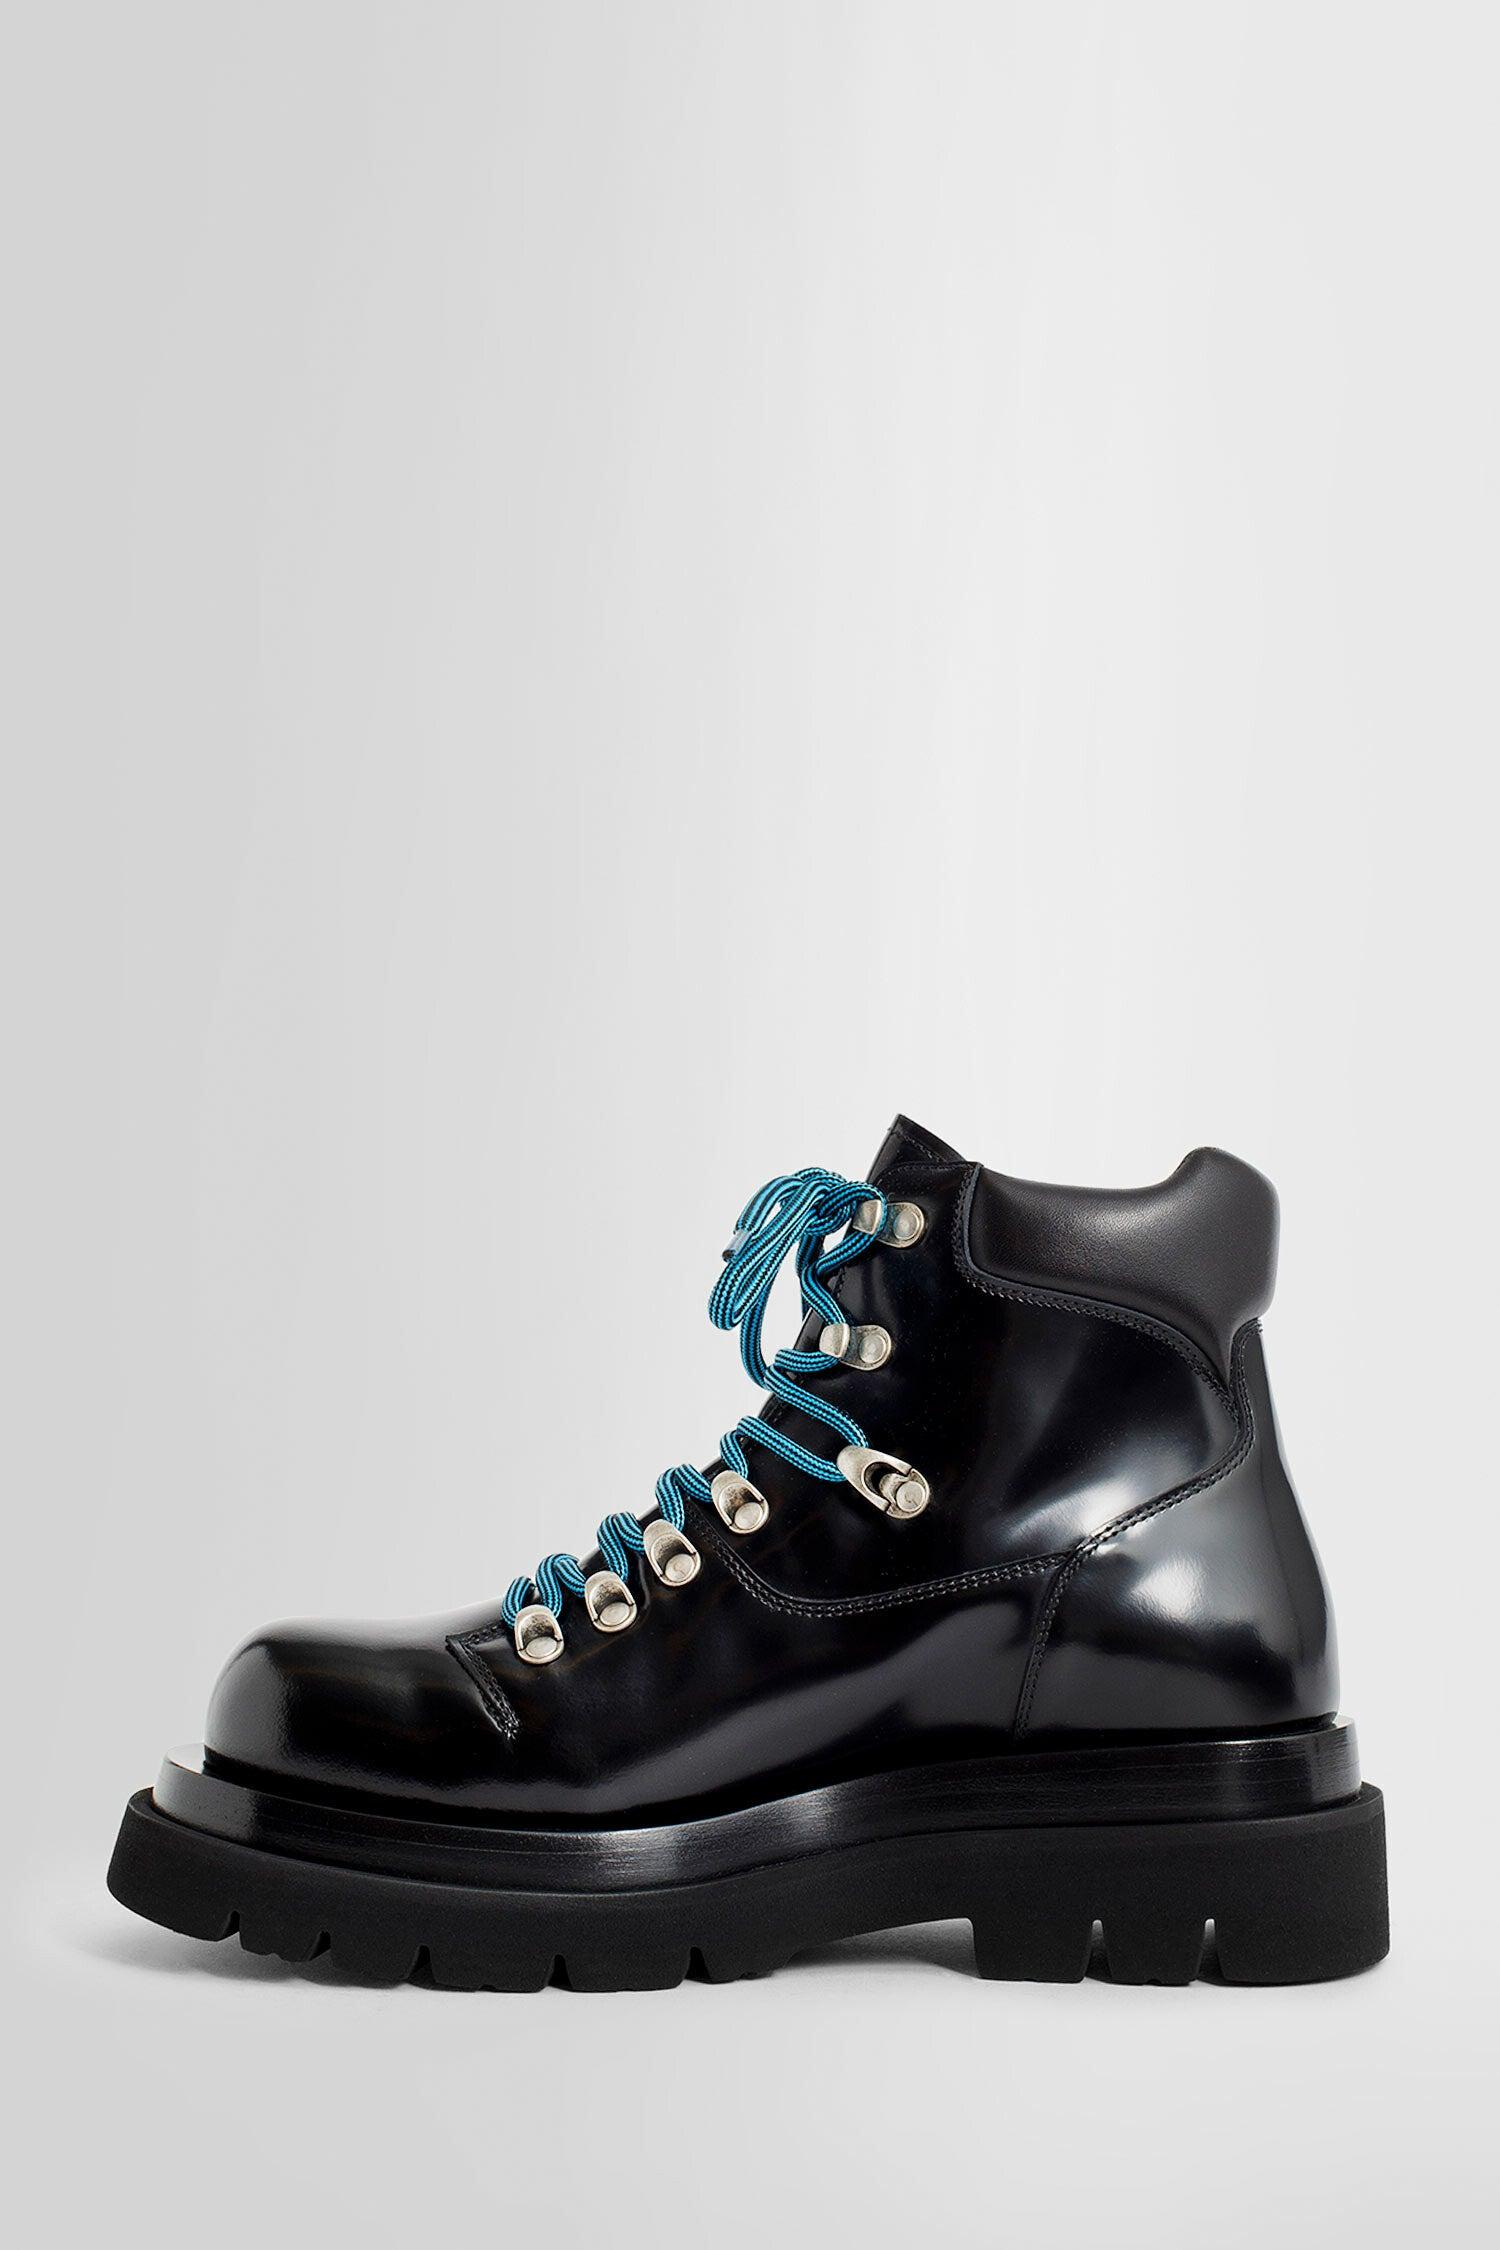 Bottega Veneta Boots in Black for Men | Lyst